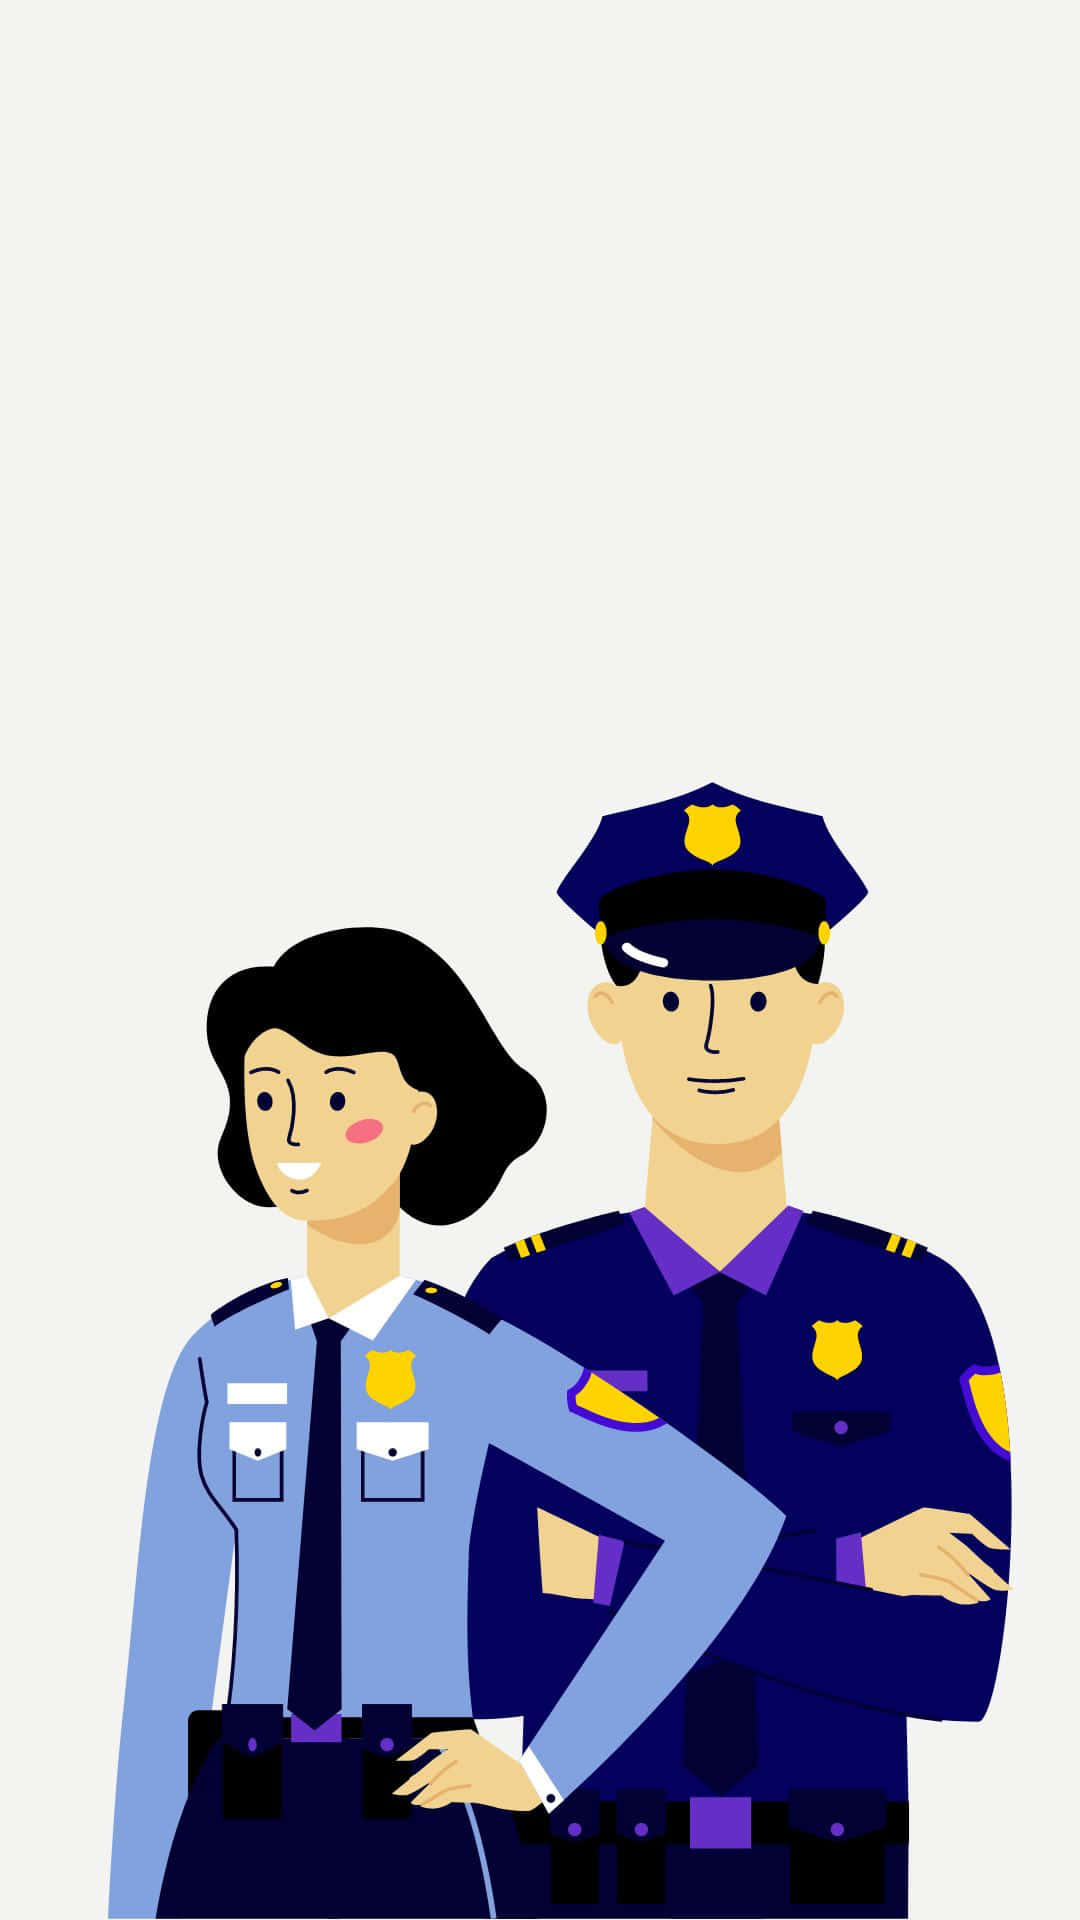 Ilustraciónvectorial Digital De Un Policía En Estilo De Dibujo Animado. Fondo de pantalla